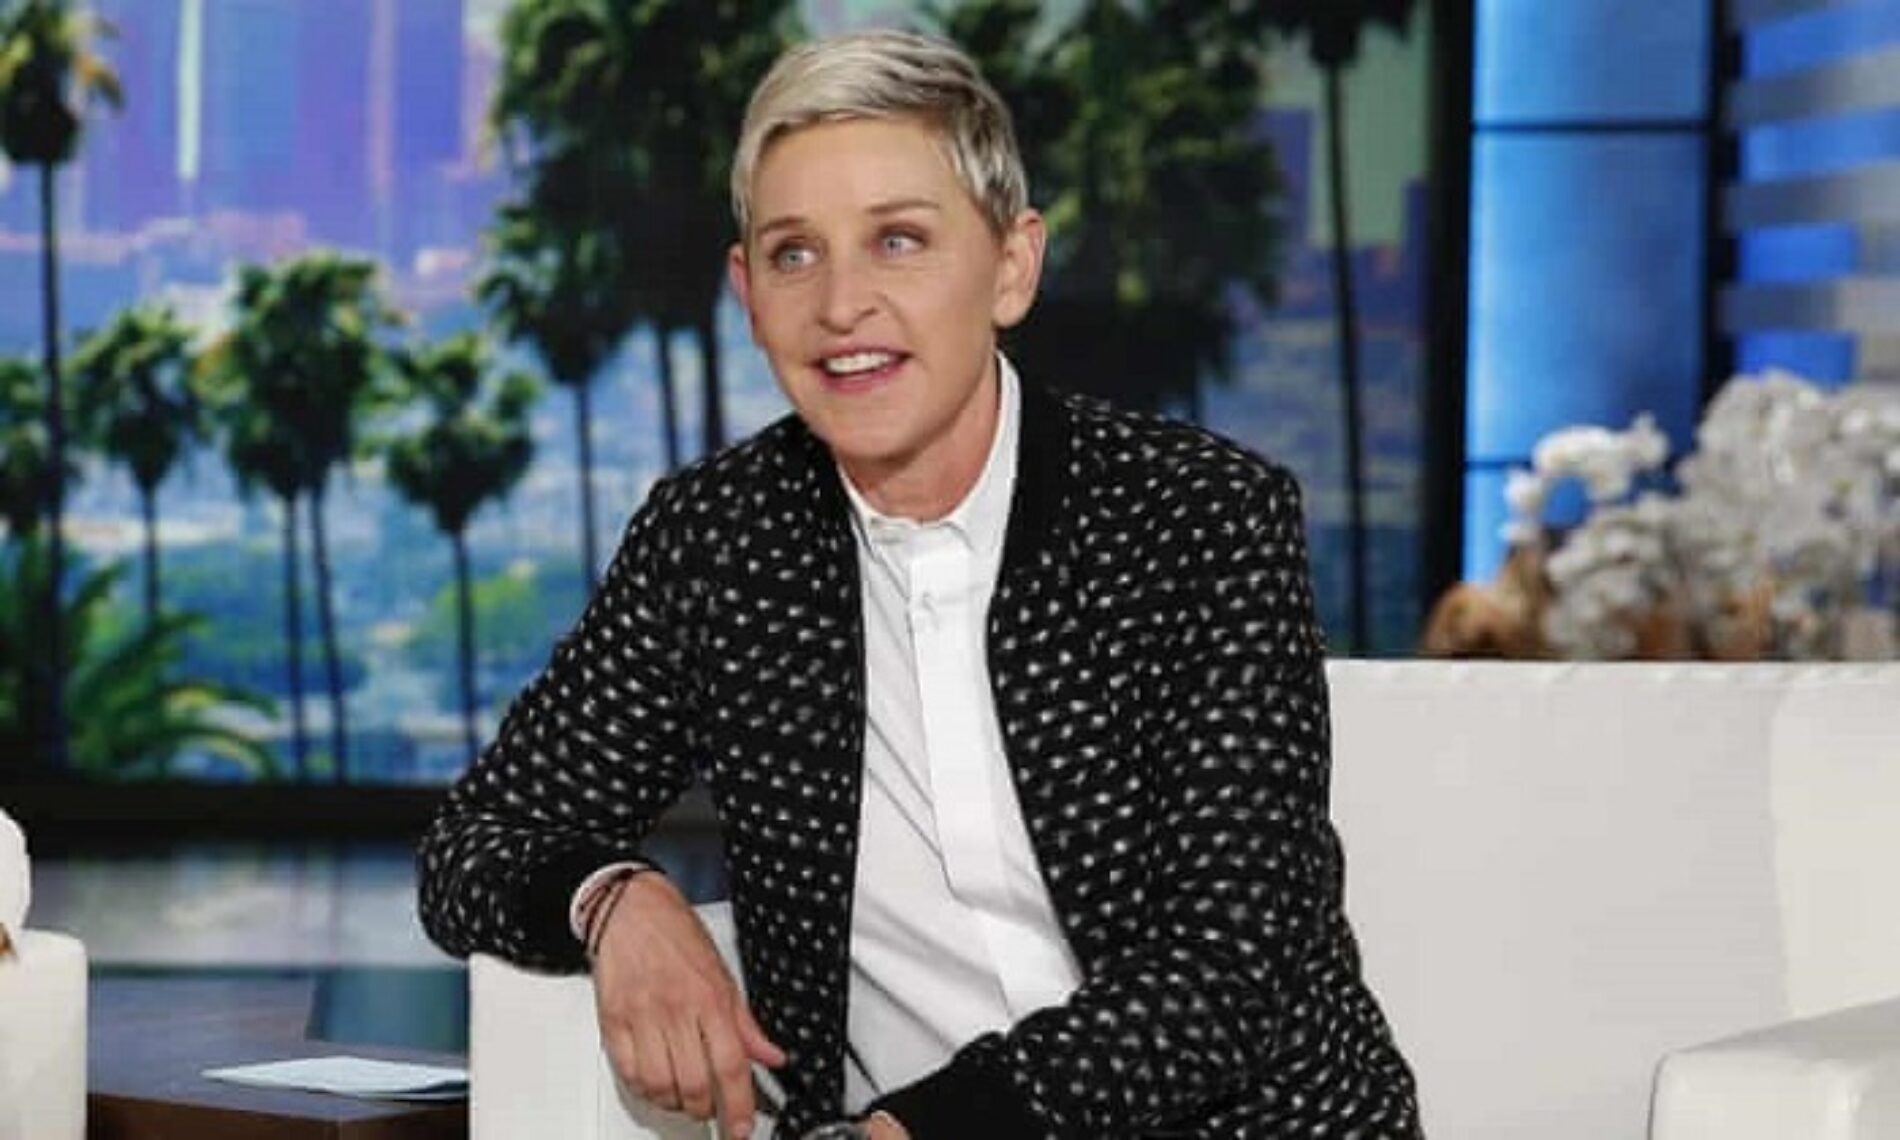 Ellen DeGeneres is ending her talk show next year after 19 seasons